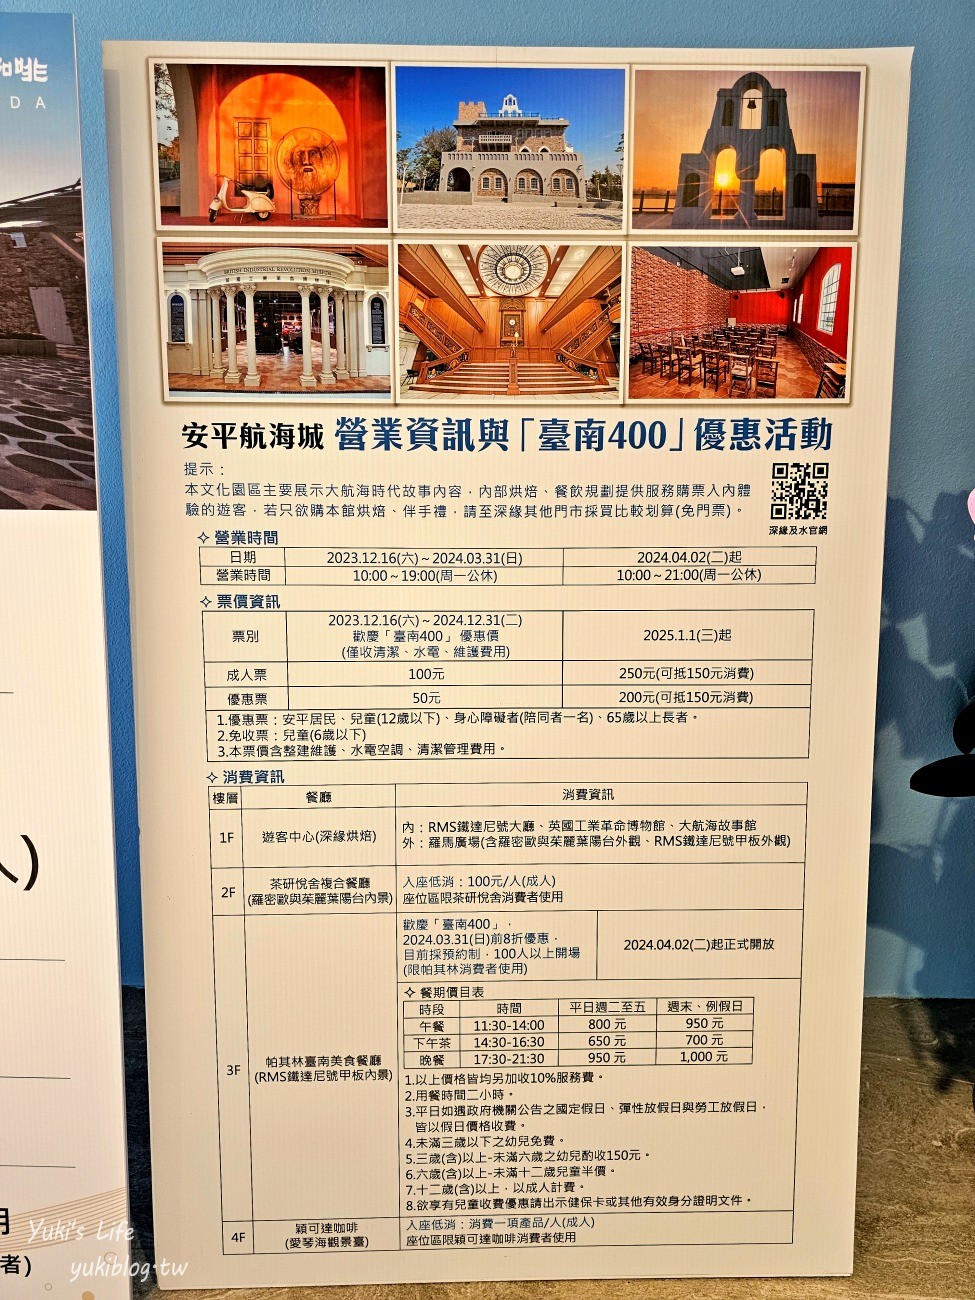 台南新景點【安平航海城】登上鐵達尼號不是夢！藍白建築、異國場景超好拍 - yukiblog.tw